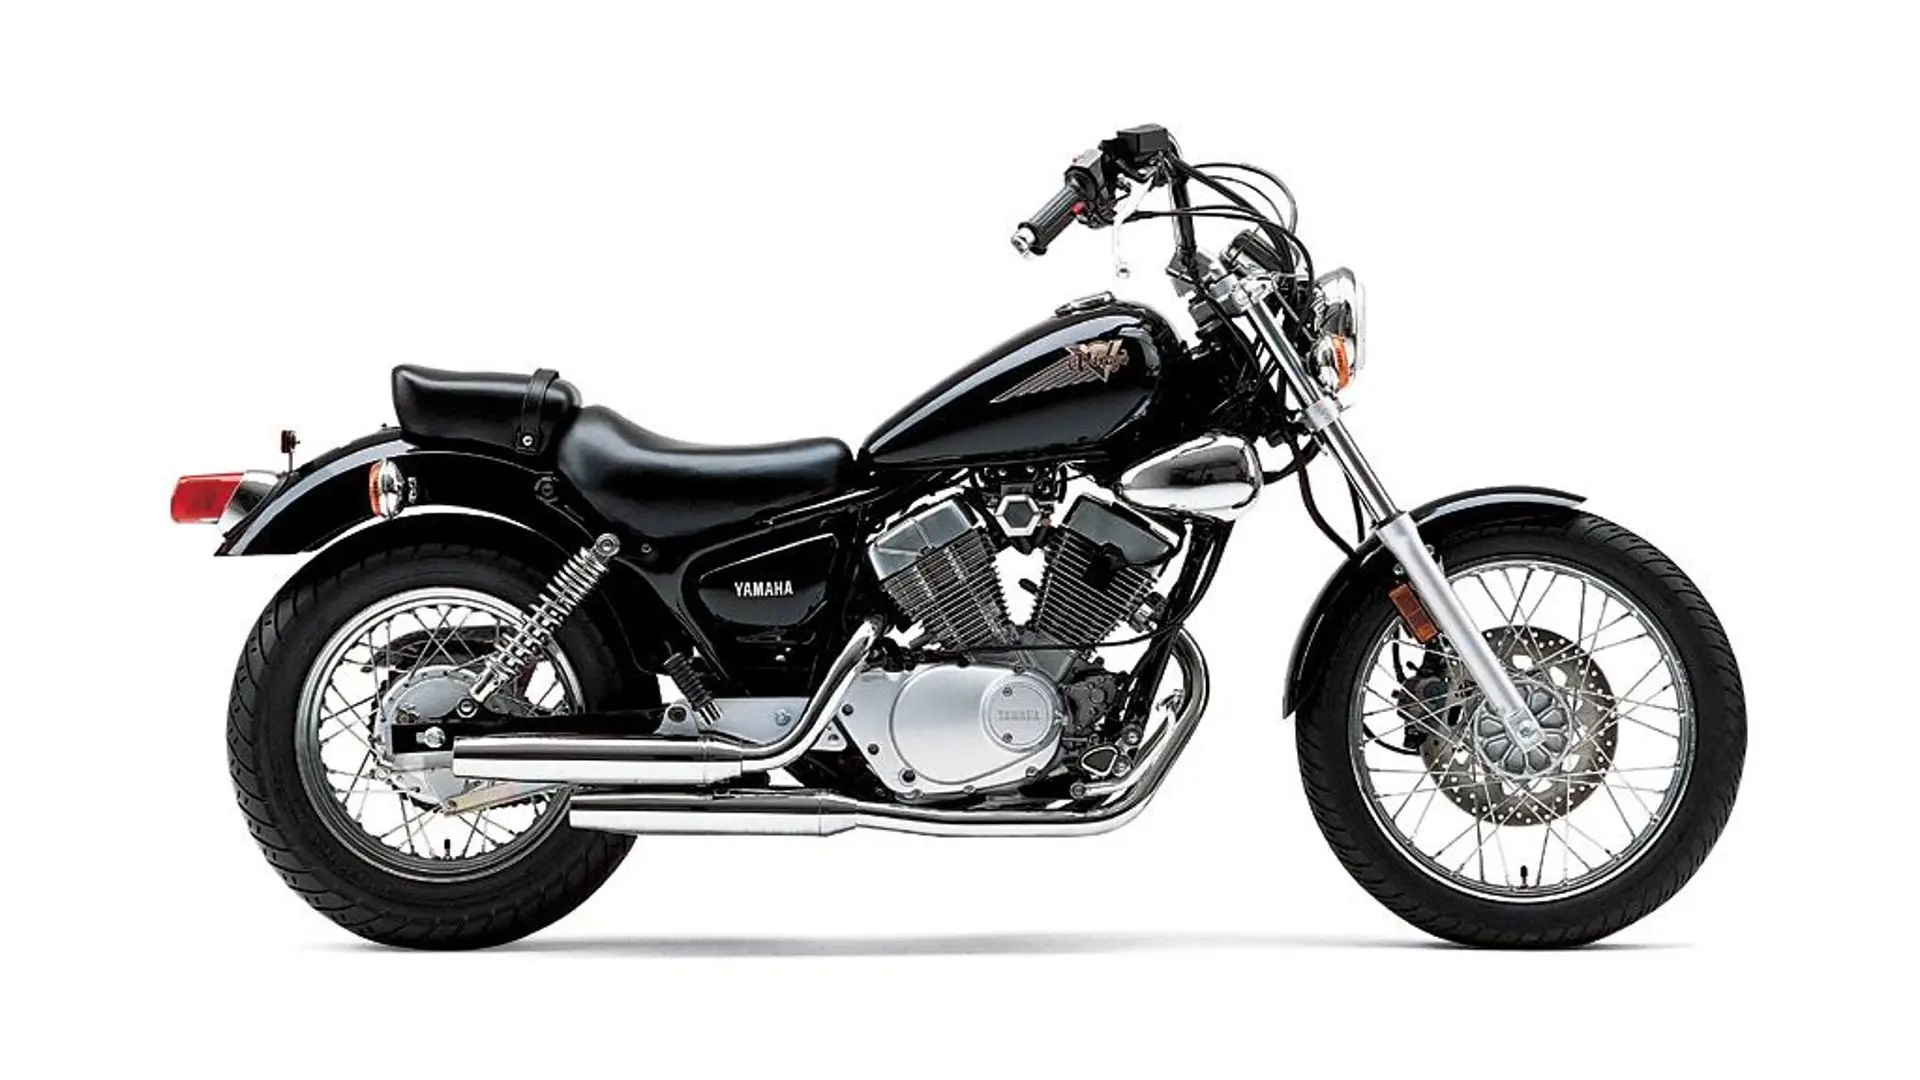 2. Yamaha Xv 250 Virago motos custom